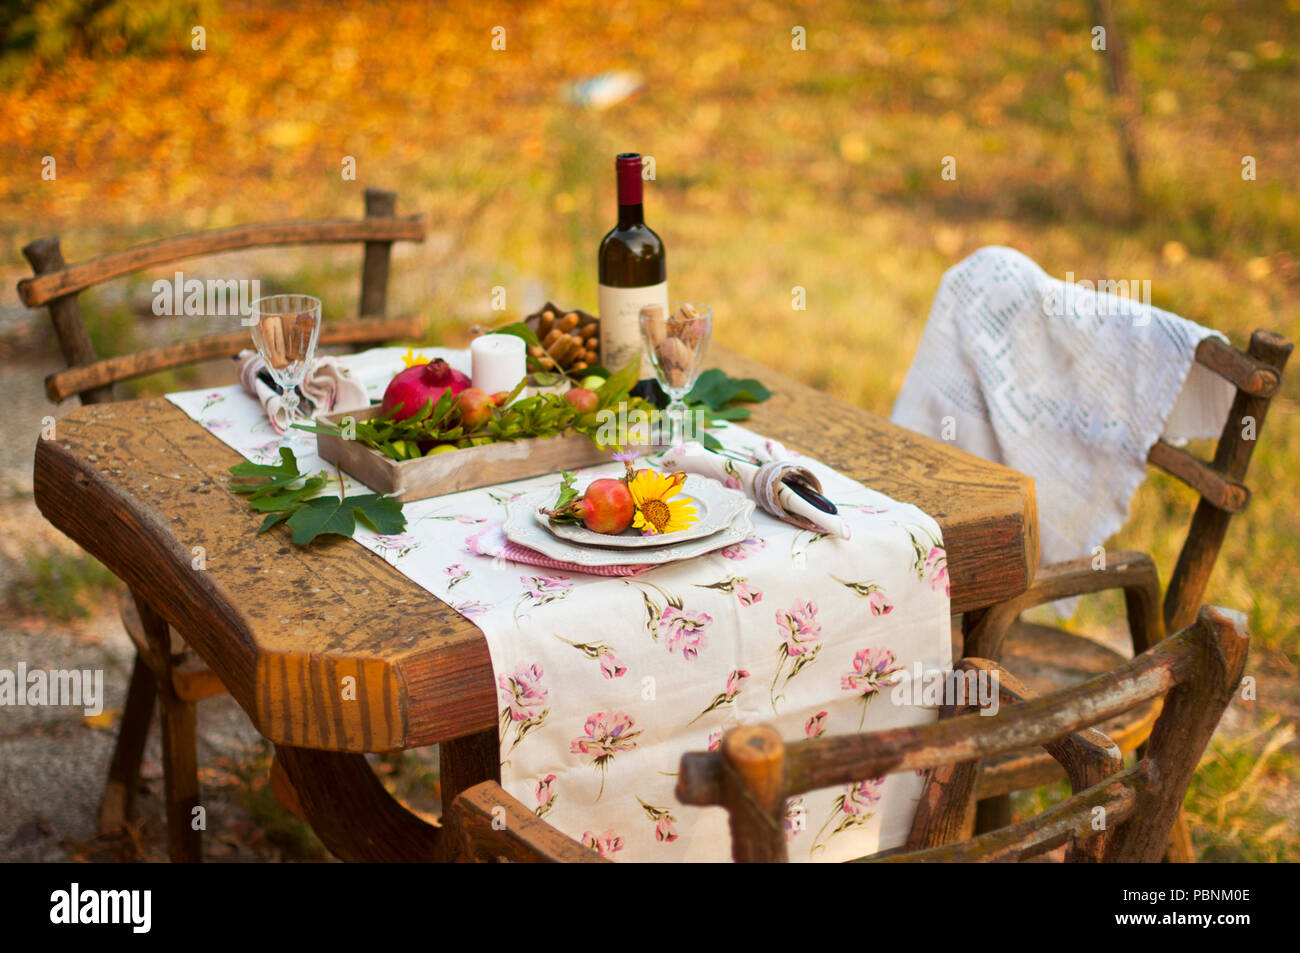 Cena romantica a lume di candela nel giardino d'autunno, impostazione tabella per una bella cena. Vino, frutta, melograno e fiori. Pic-nic all'aria aperta Foto Stock